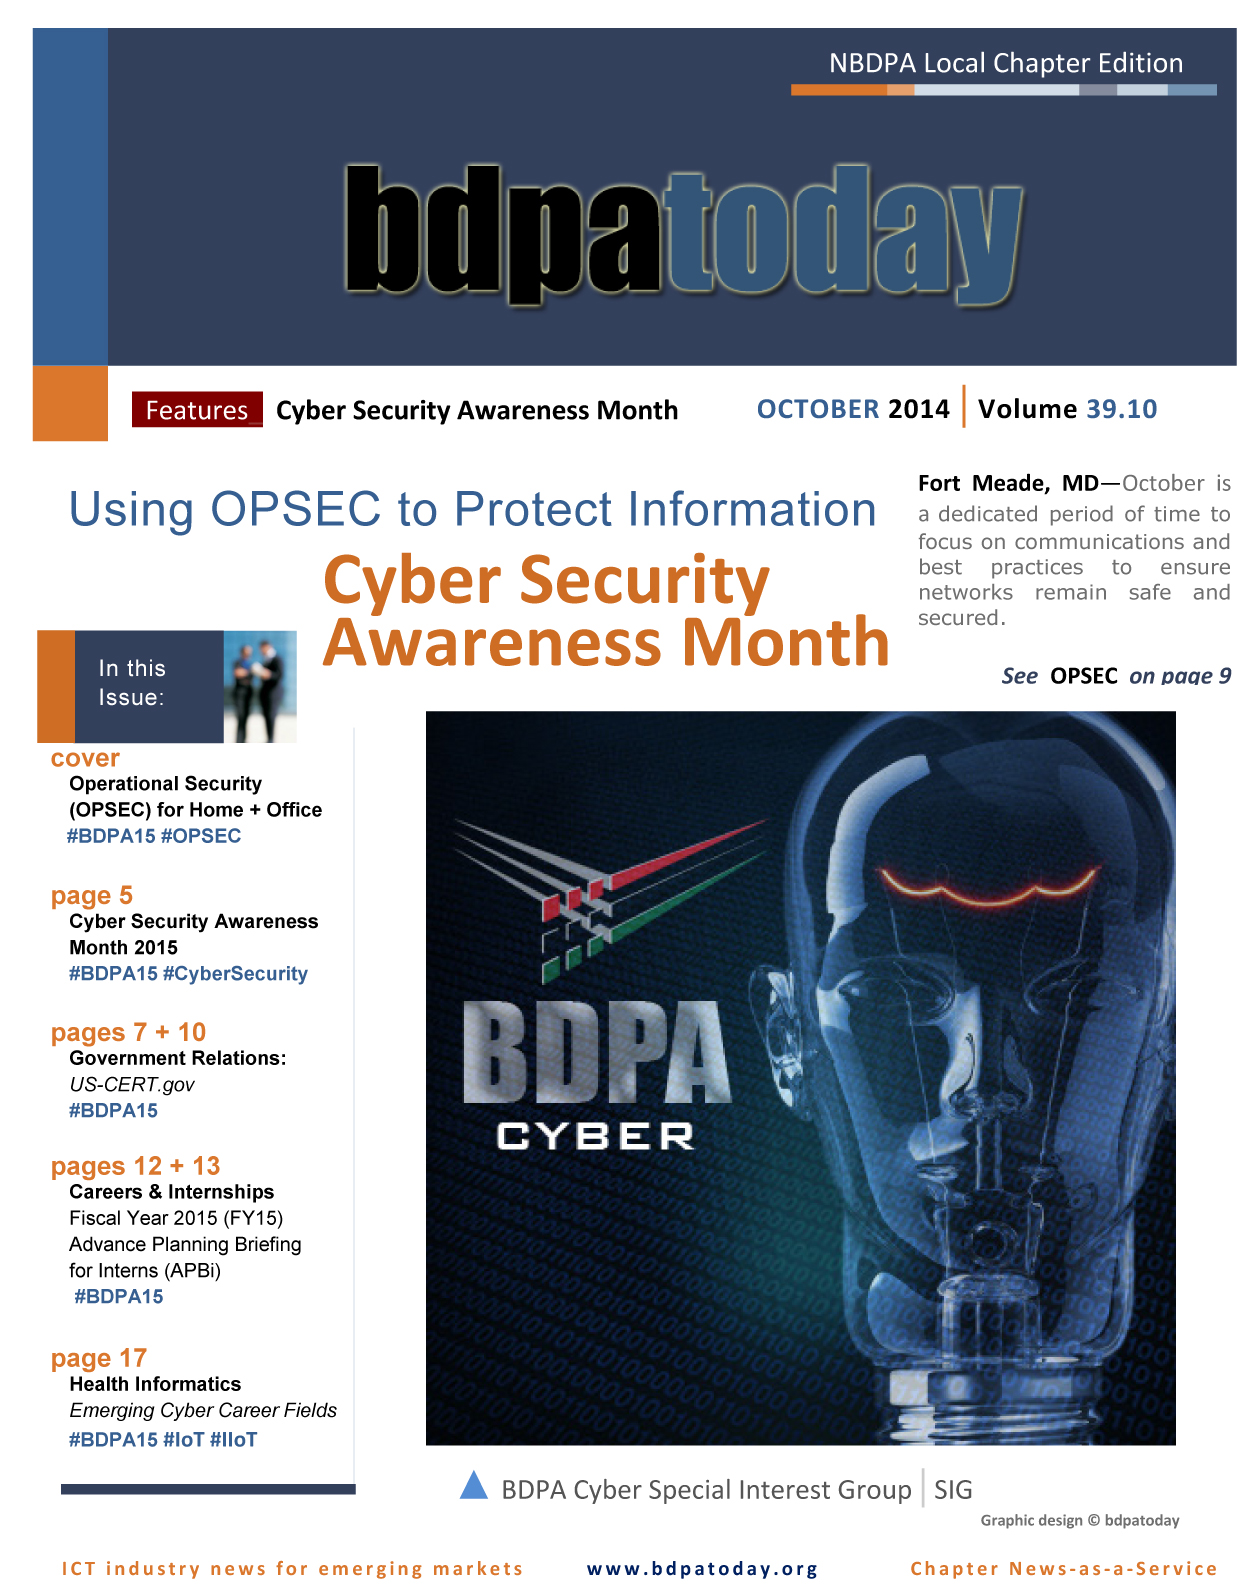 bdpatoday | October 2014 edition